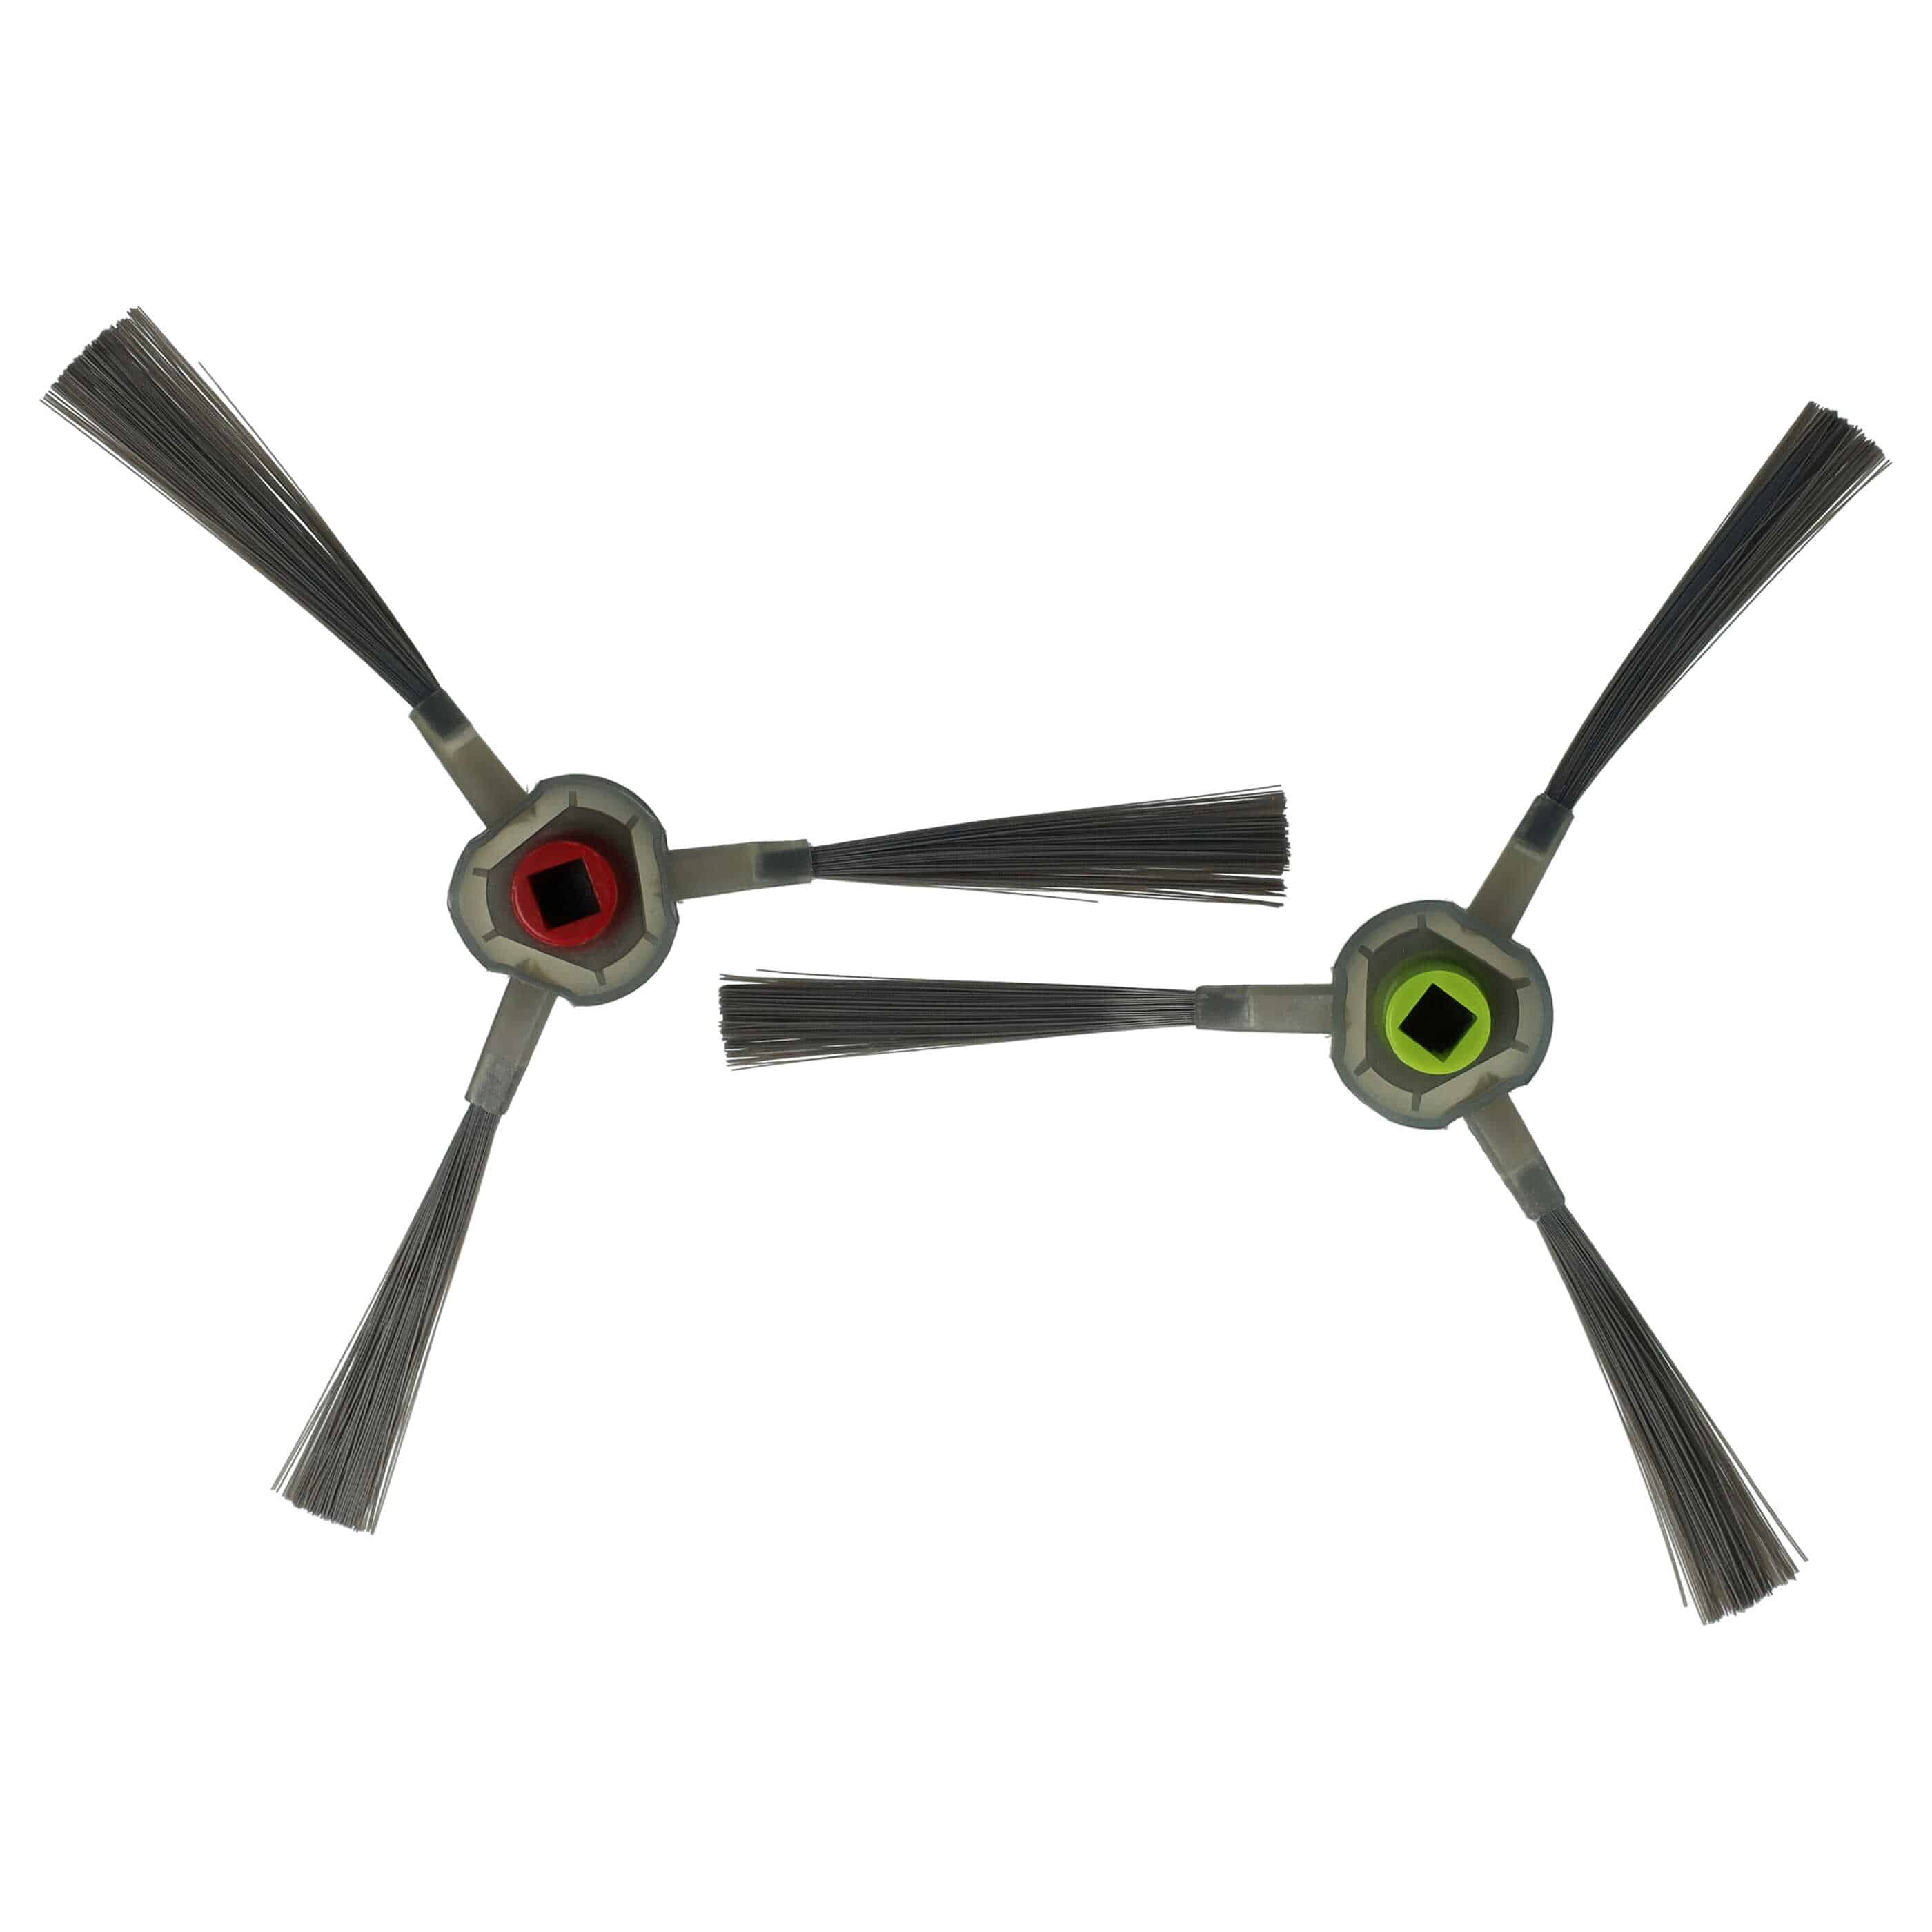 2x Cepillo lateral 3 brazos para robot aspirador iRobot, Ecovacs i7 - Set de cepillos gris oscuro